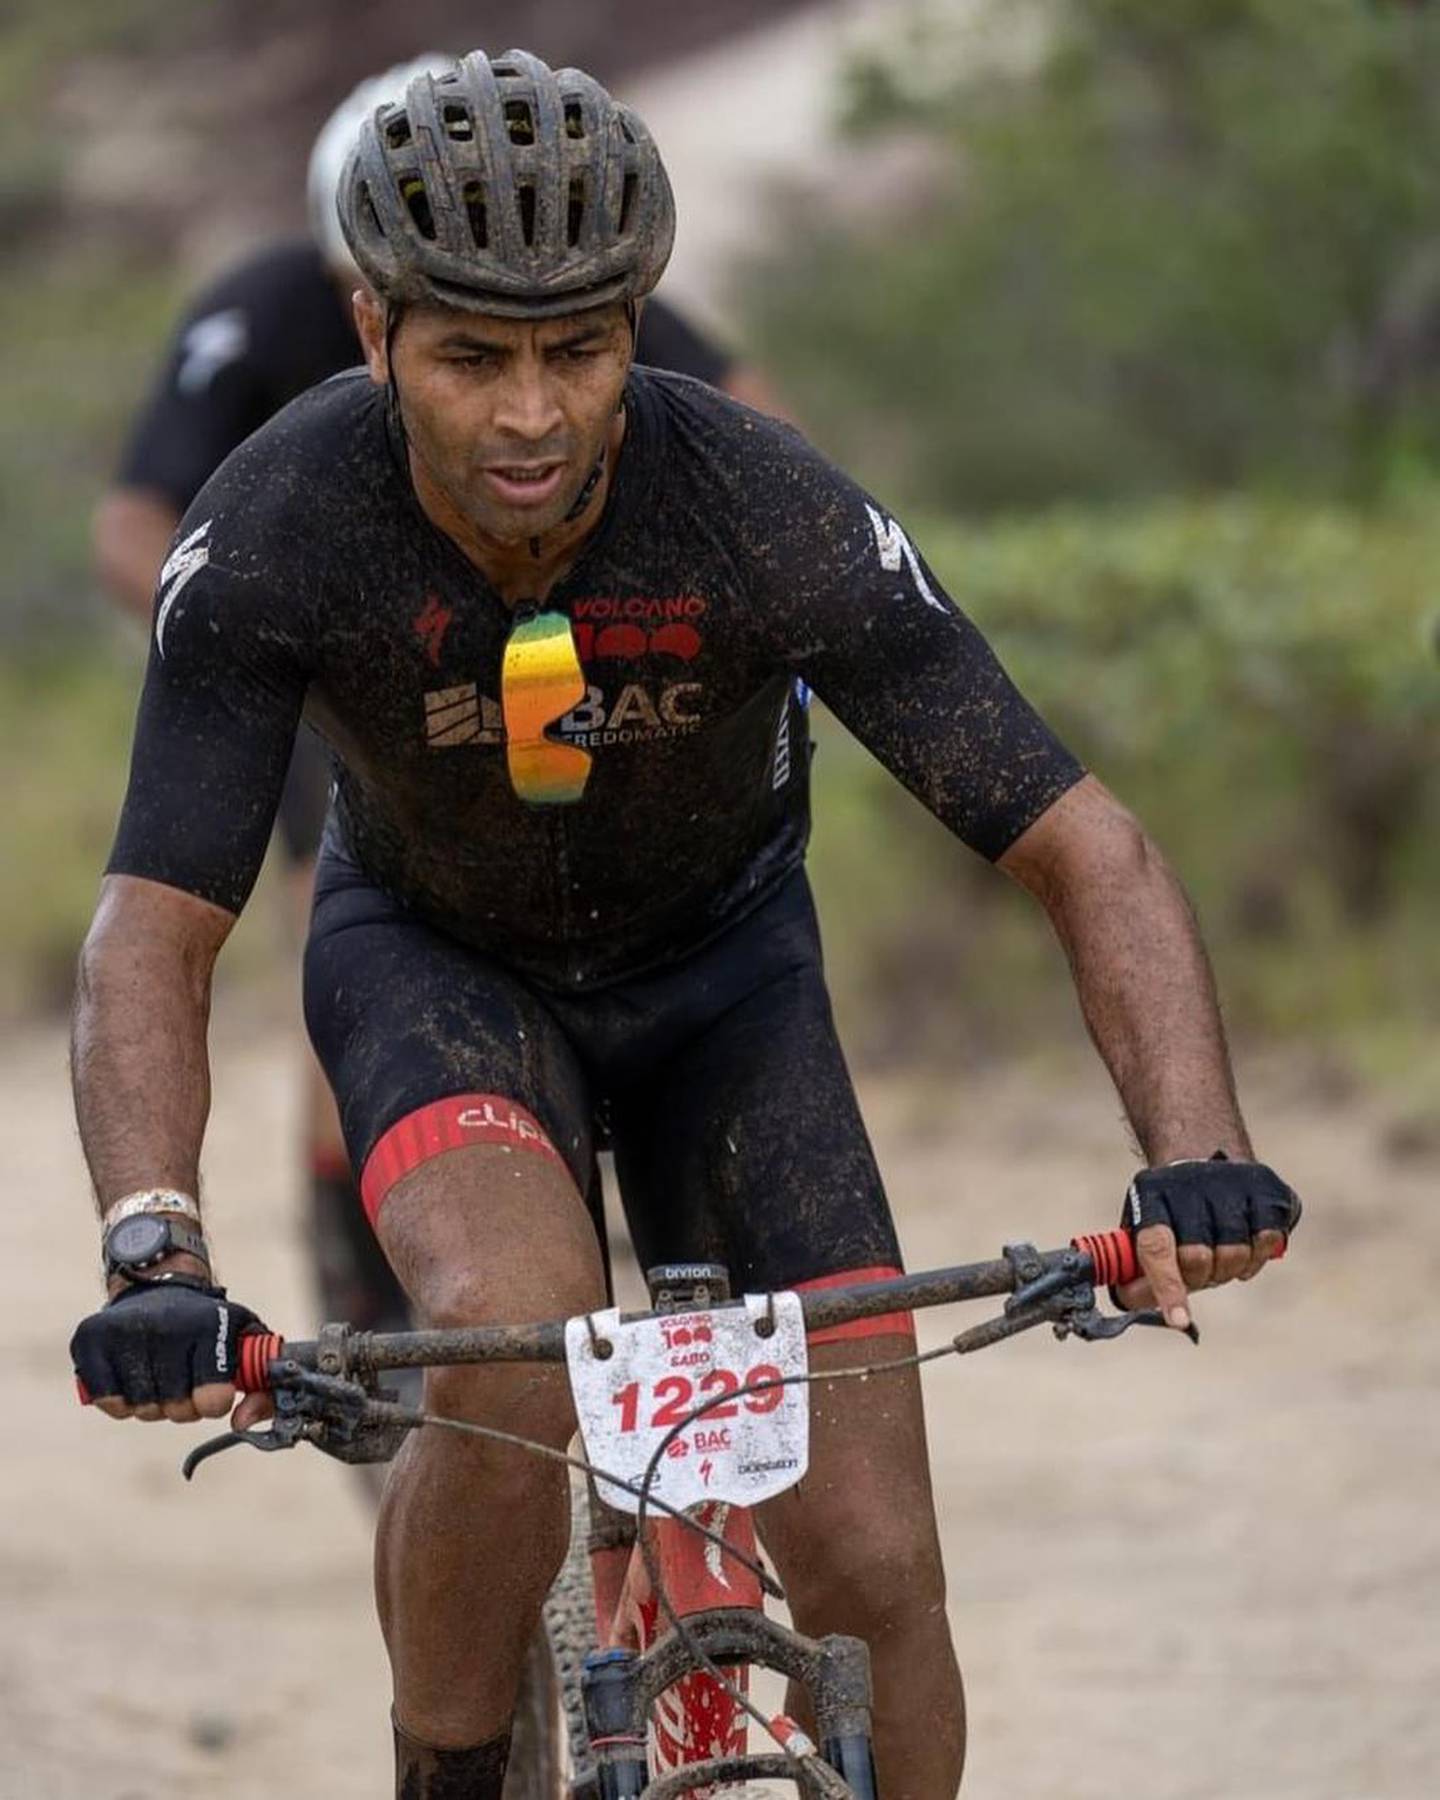 El pasado sábado 3 de setiembre, junto a otros 2.249 ciclistas, el exfutbolista Álvaro Saborío debutó en una competencia de ciclismo después del retiro, la Volcano 100, una competencia alrededor de volcán Rincón de la Vieja